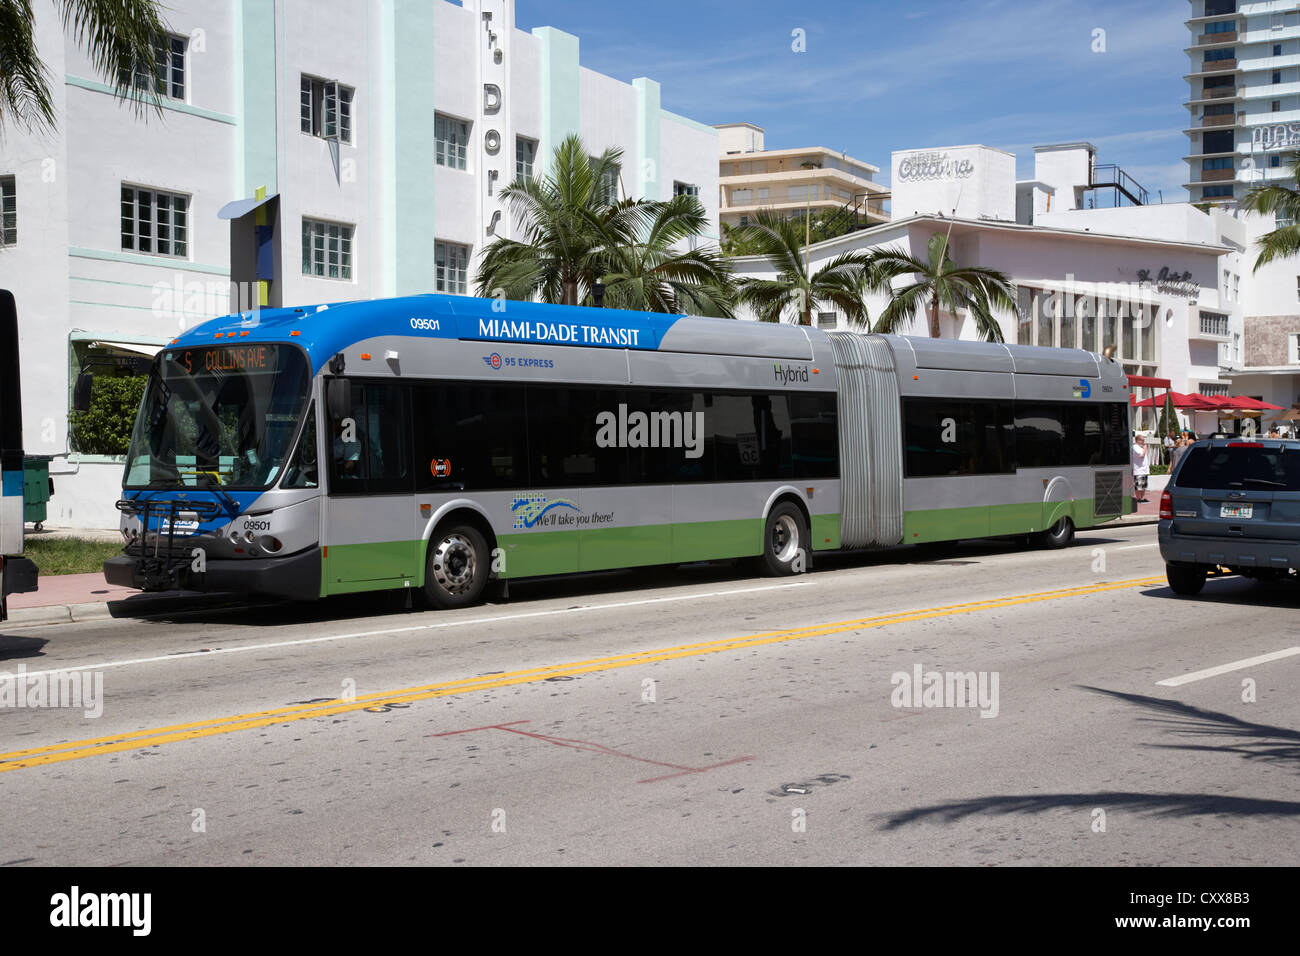 miami-dade transit hybrid public bus transport miami south beach florida usa Stock Photo